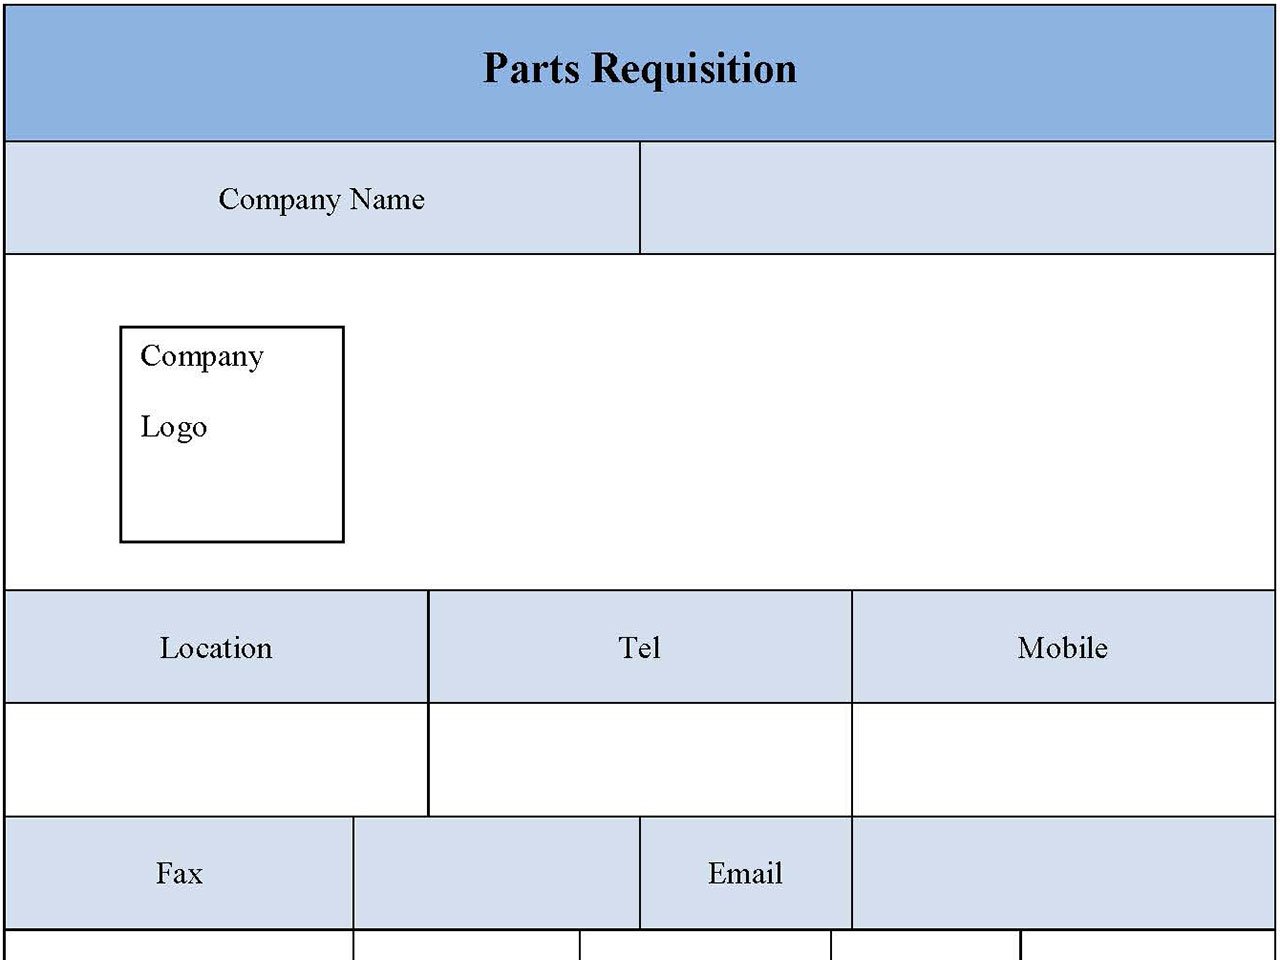 Parts Requisition Form